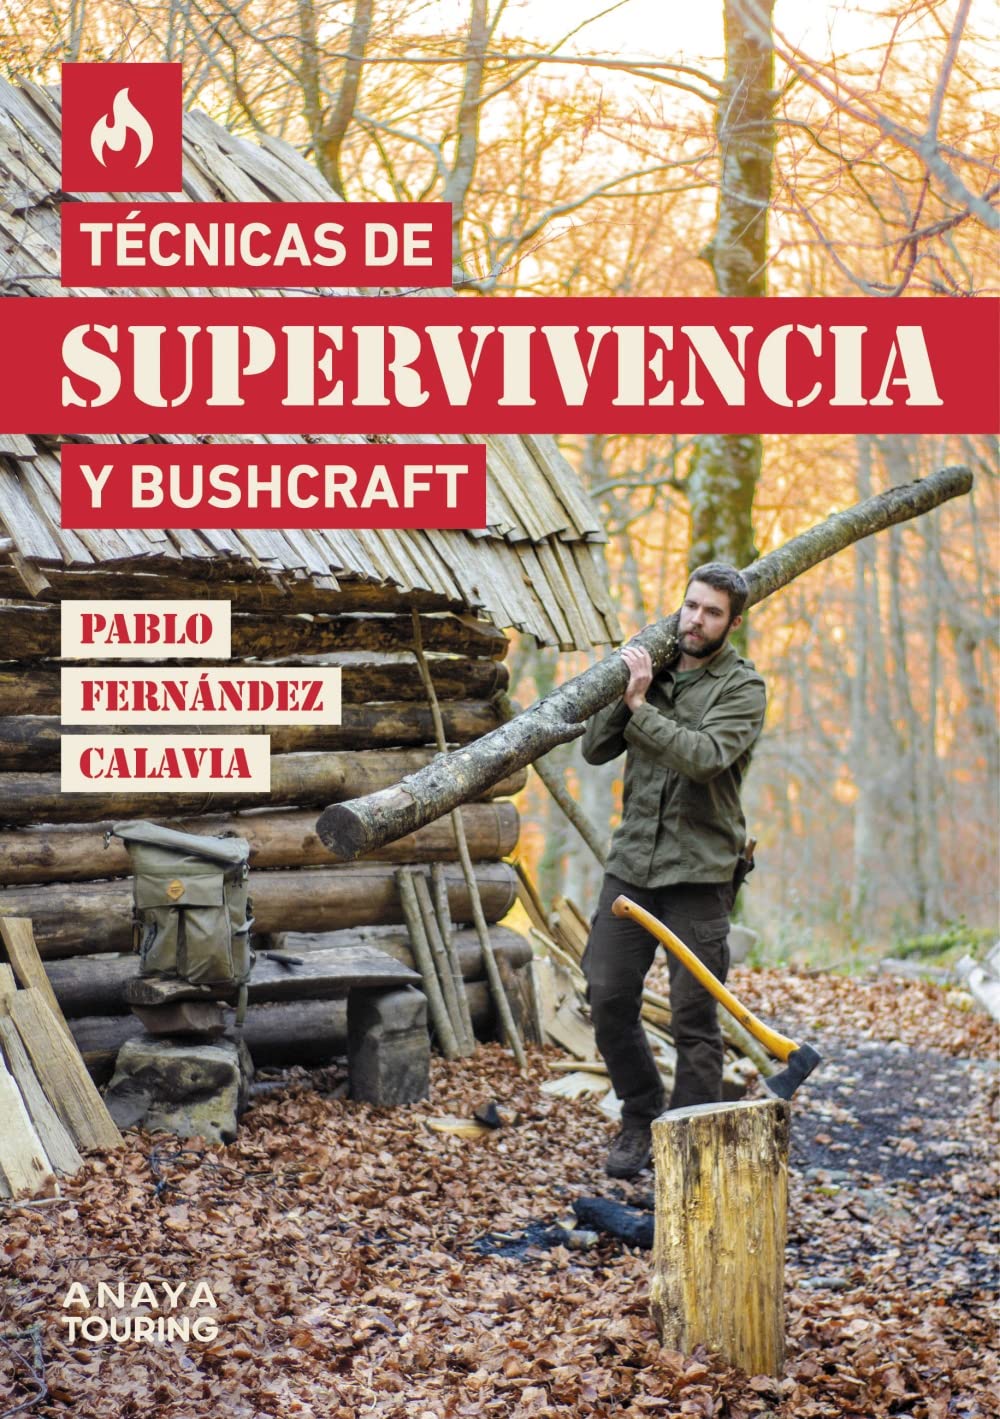 Técnicas de Supervivencia y Bushcraft, Pablo Fernandez Calavia 